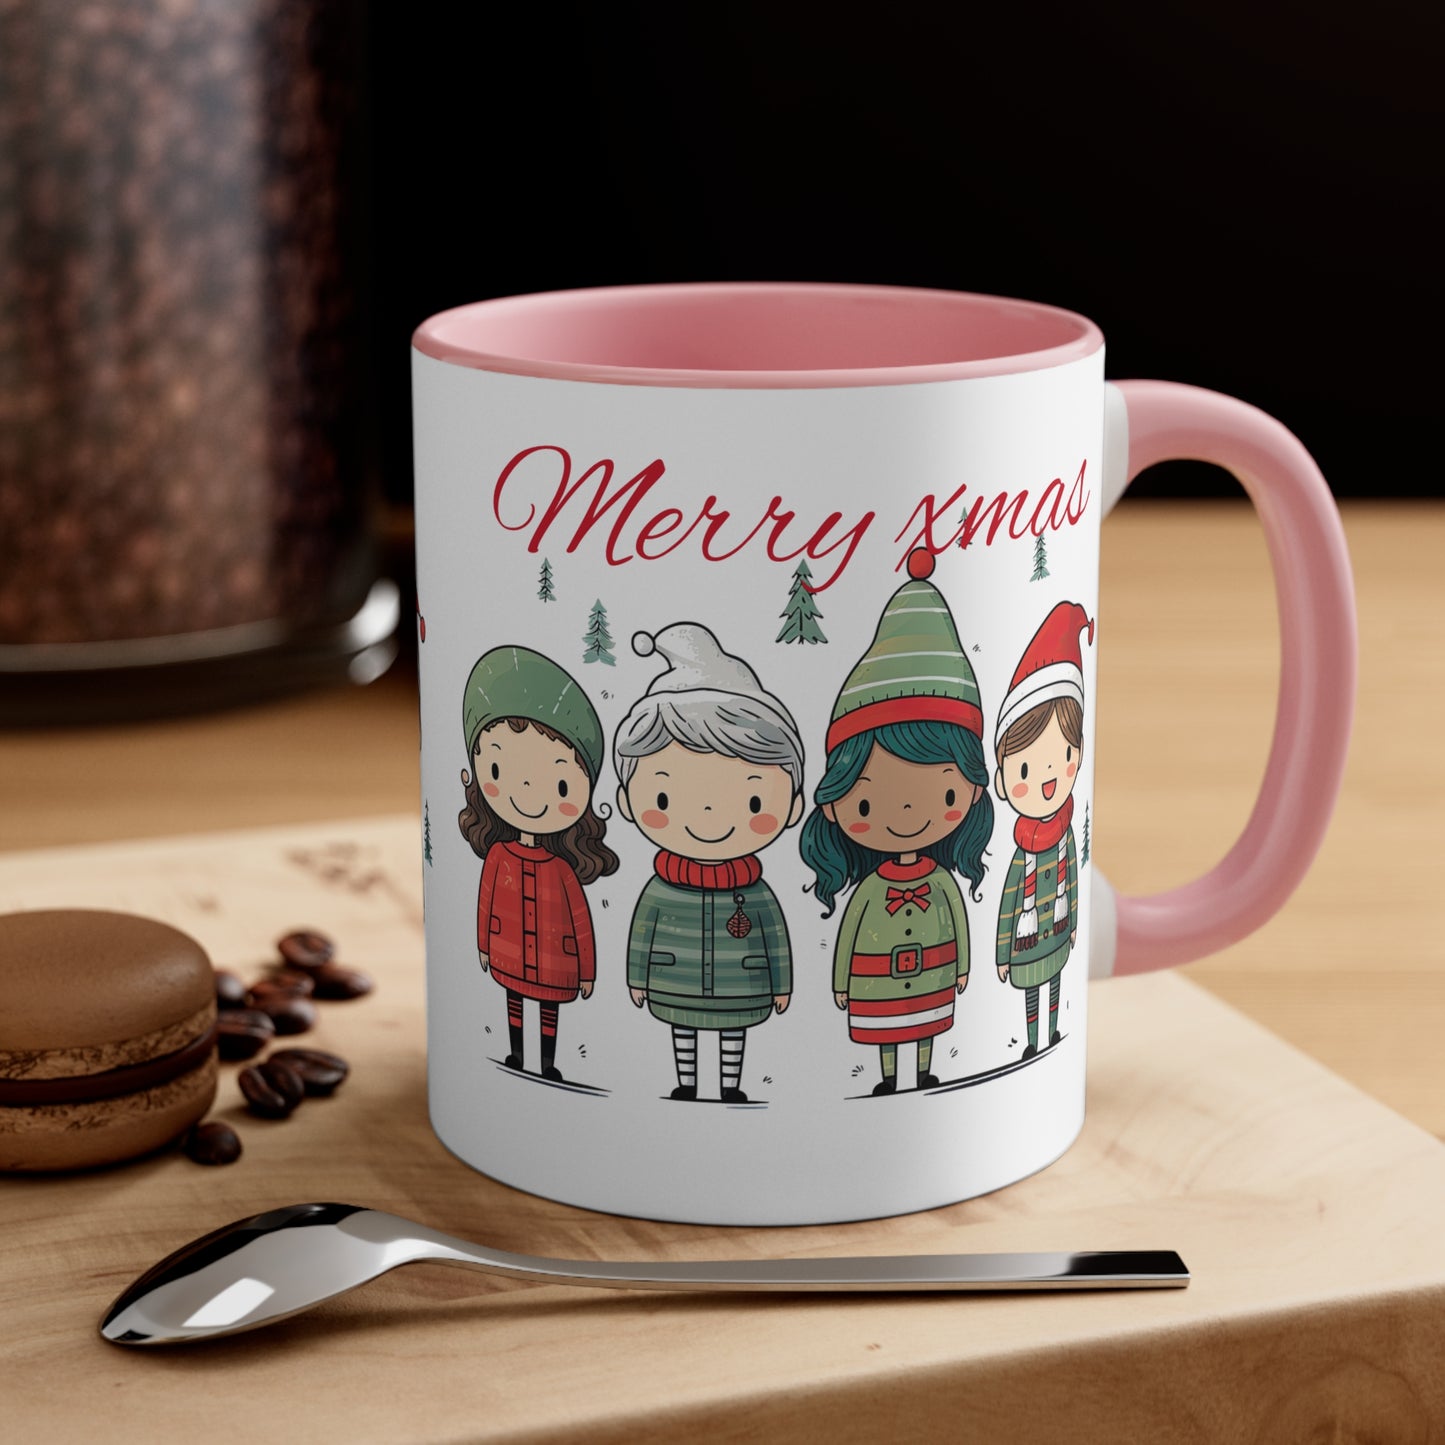 Warm and cozy Christmas mug for cold nights,perfect gift for Christmas, coffee mug, Christmas mugs, Mug of joy A perfect gift for  Christmas